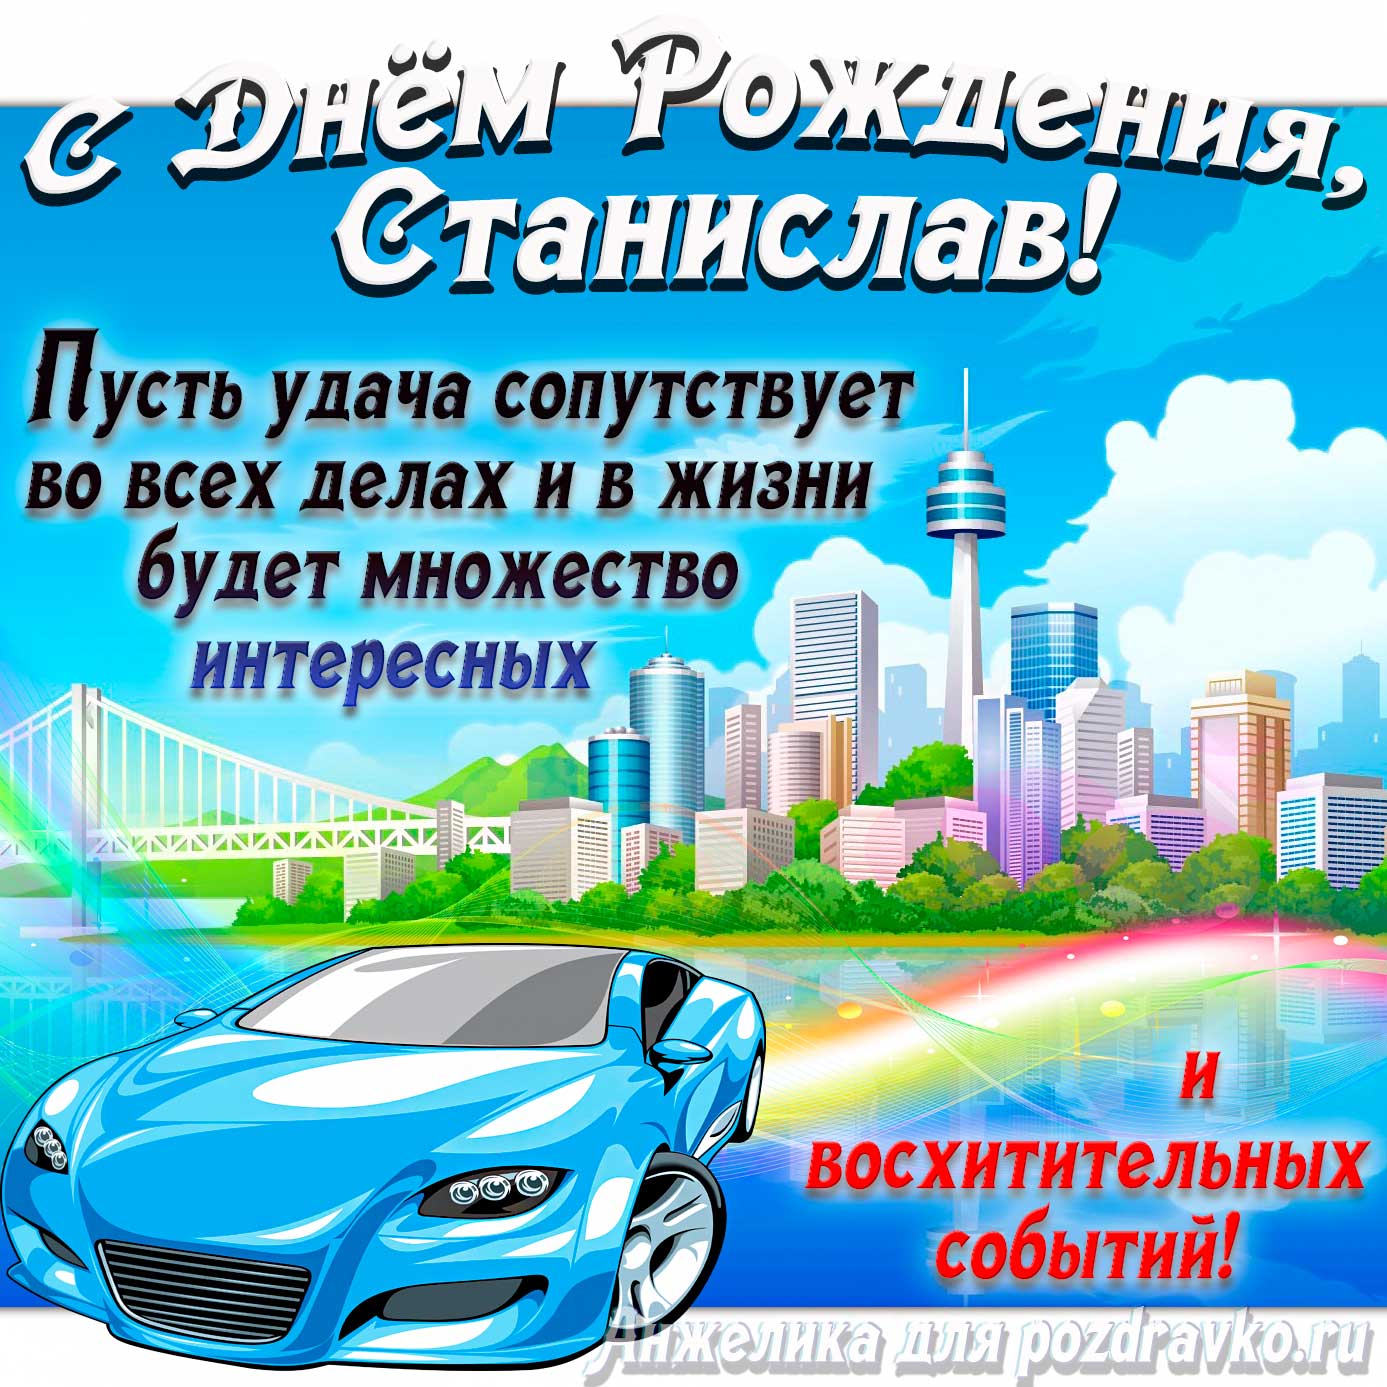 Открытка - с Днём Рождения Стас с голубой машиной и пожеланием. Скачать бесплатно или отправить картинку.